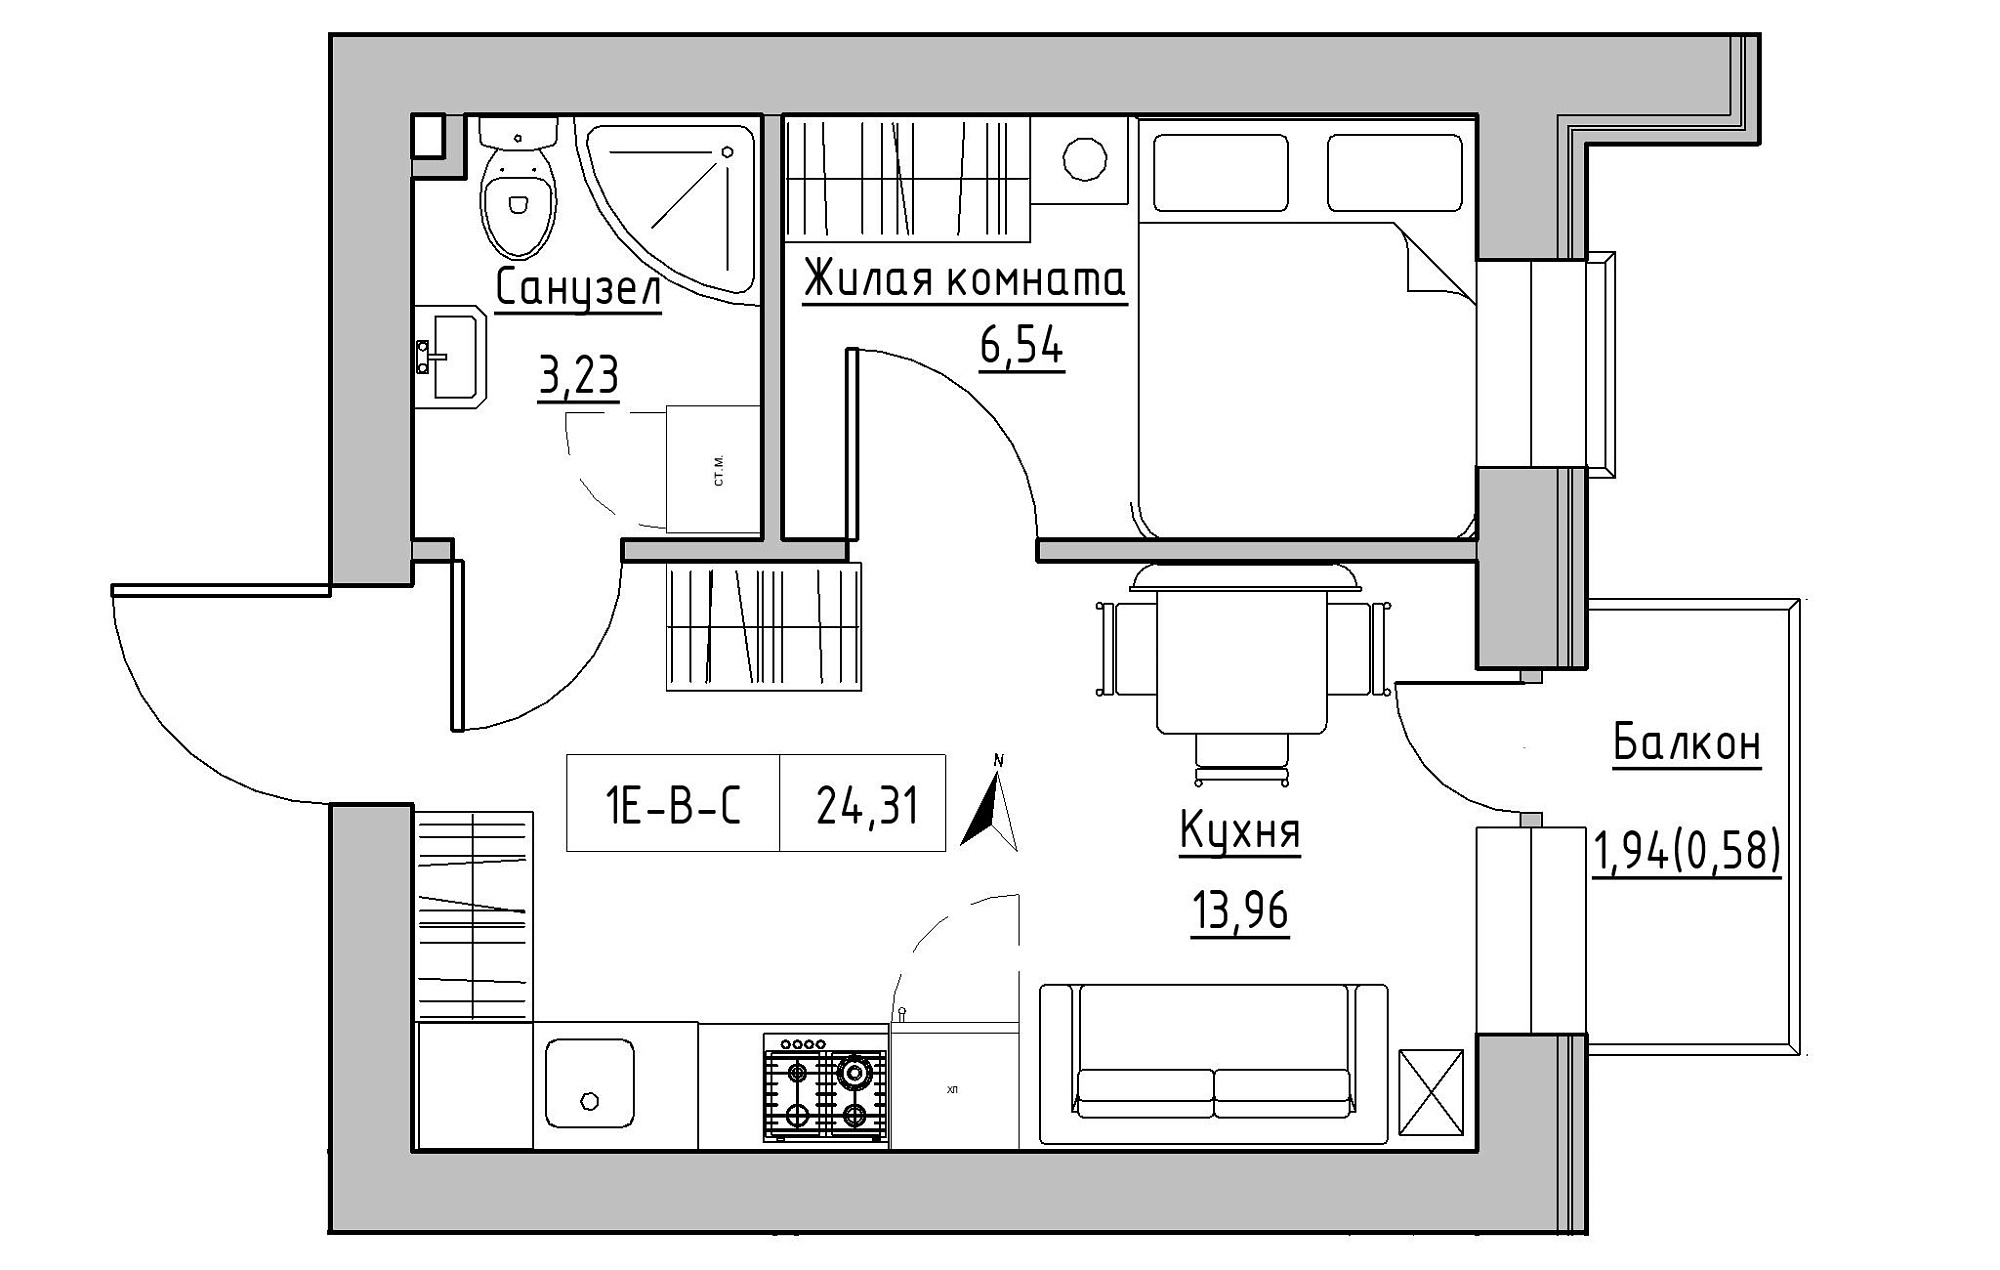 Планировка 1-к квартира площей 24.31м2, KS-019-03/0007.